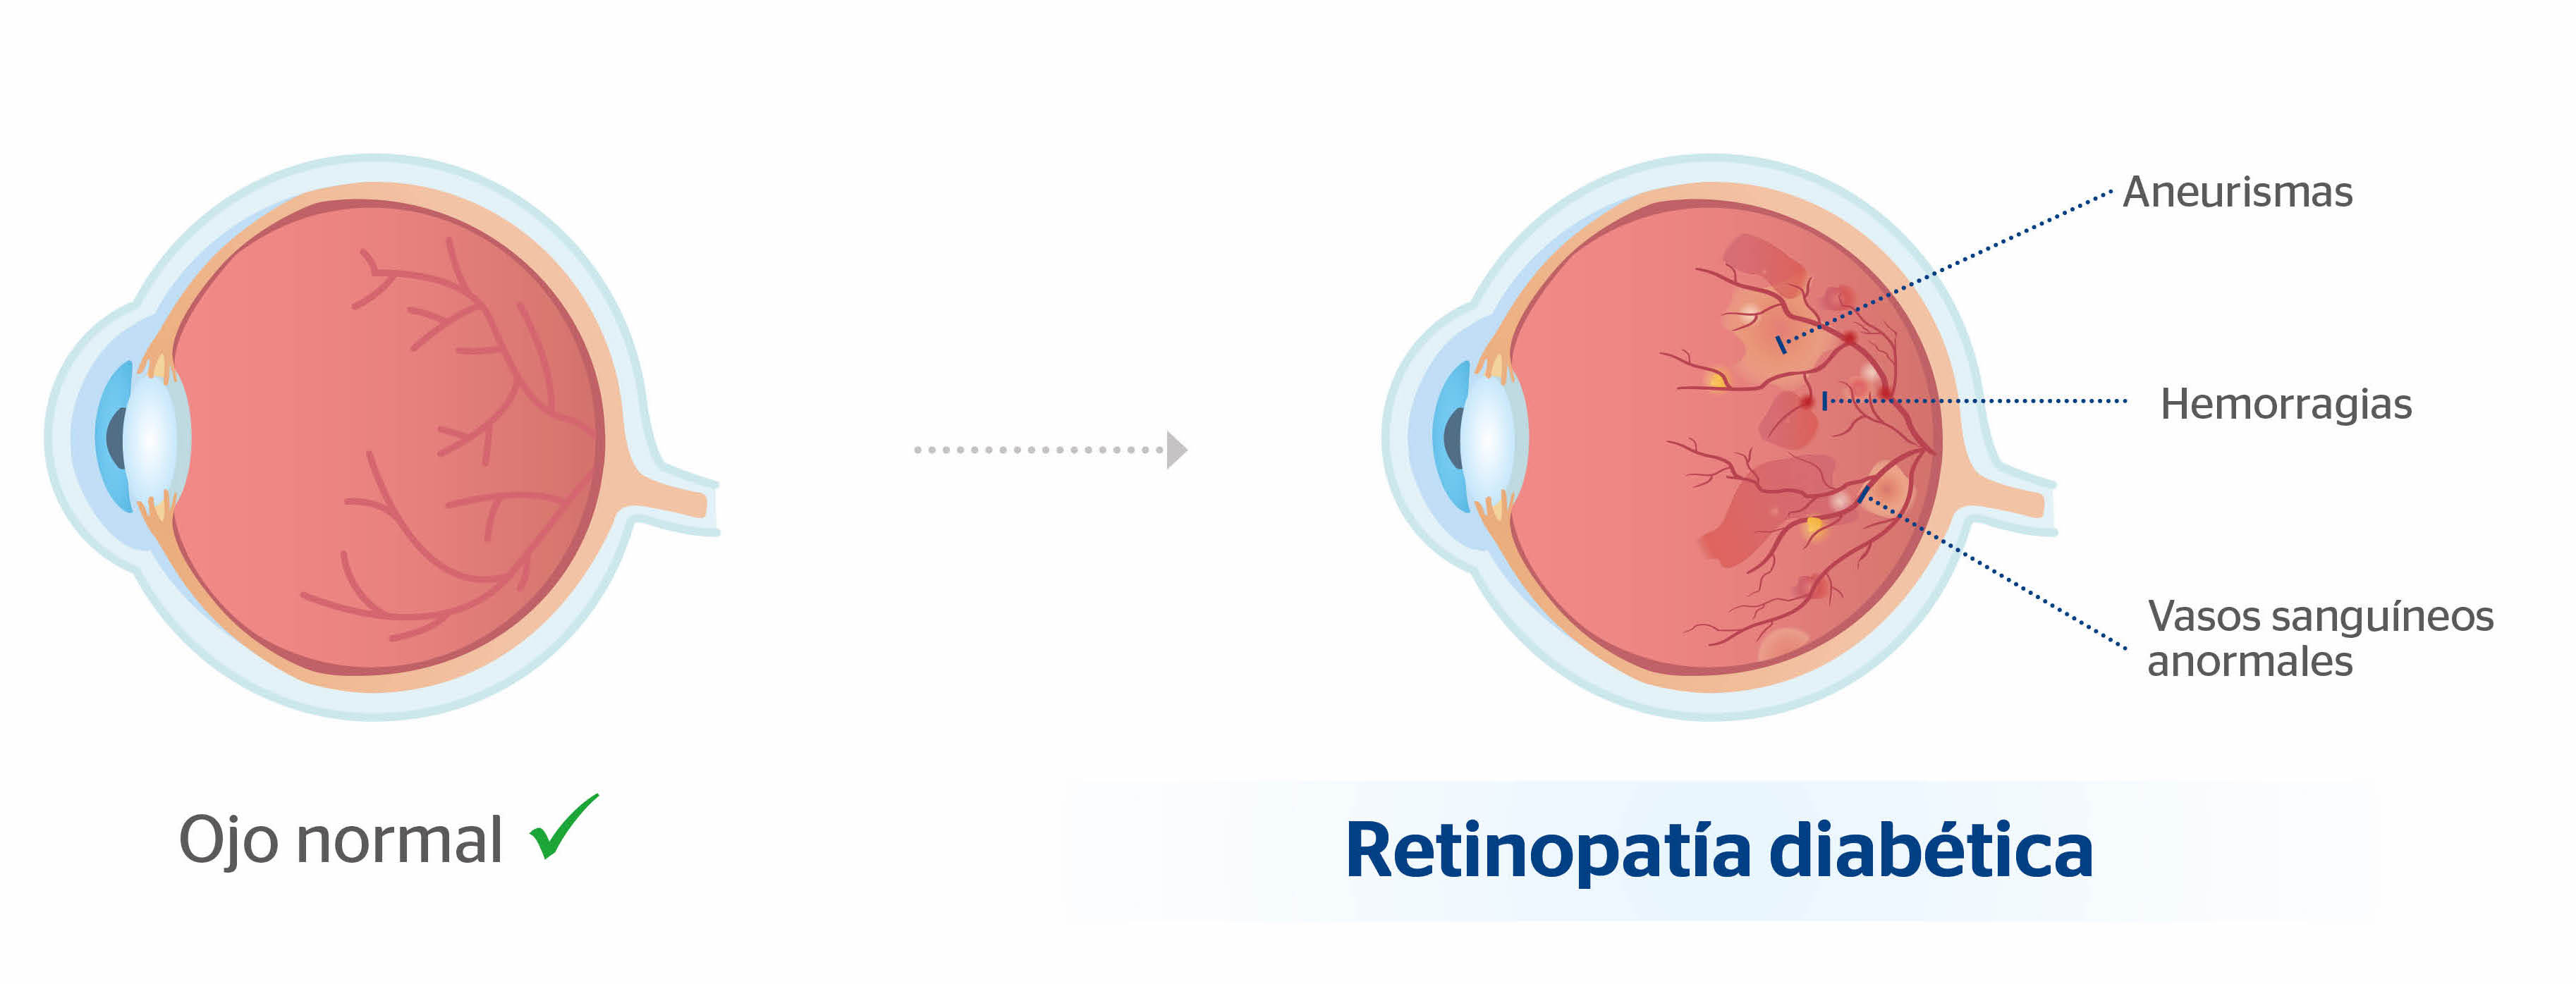 retinopatia diabetica no proliferativa sintomas népi kezelése üszkösödés során cukorbetegség